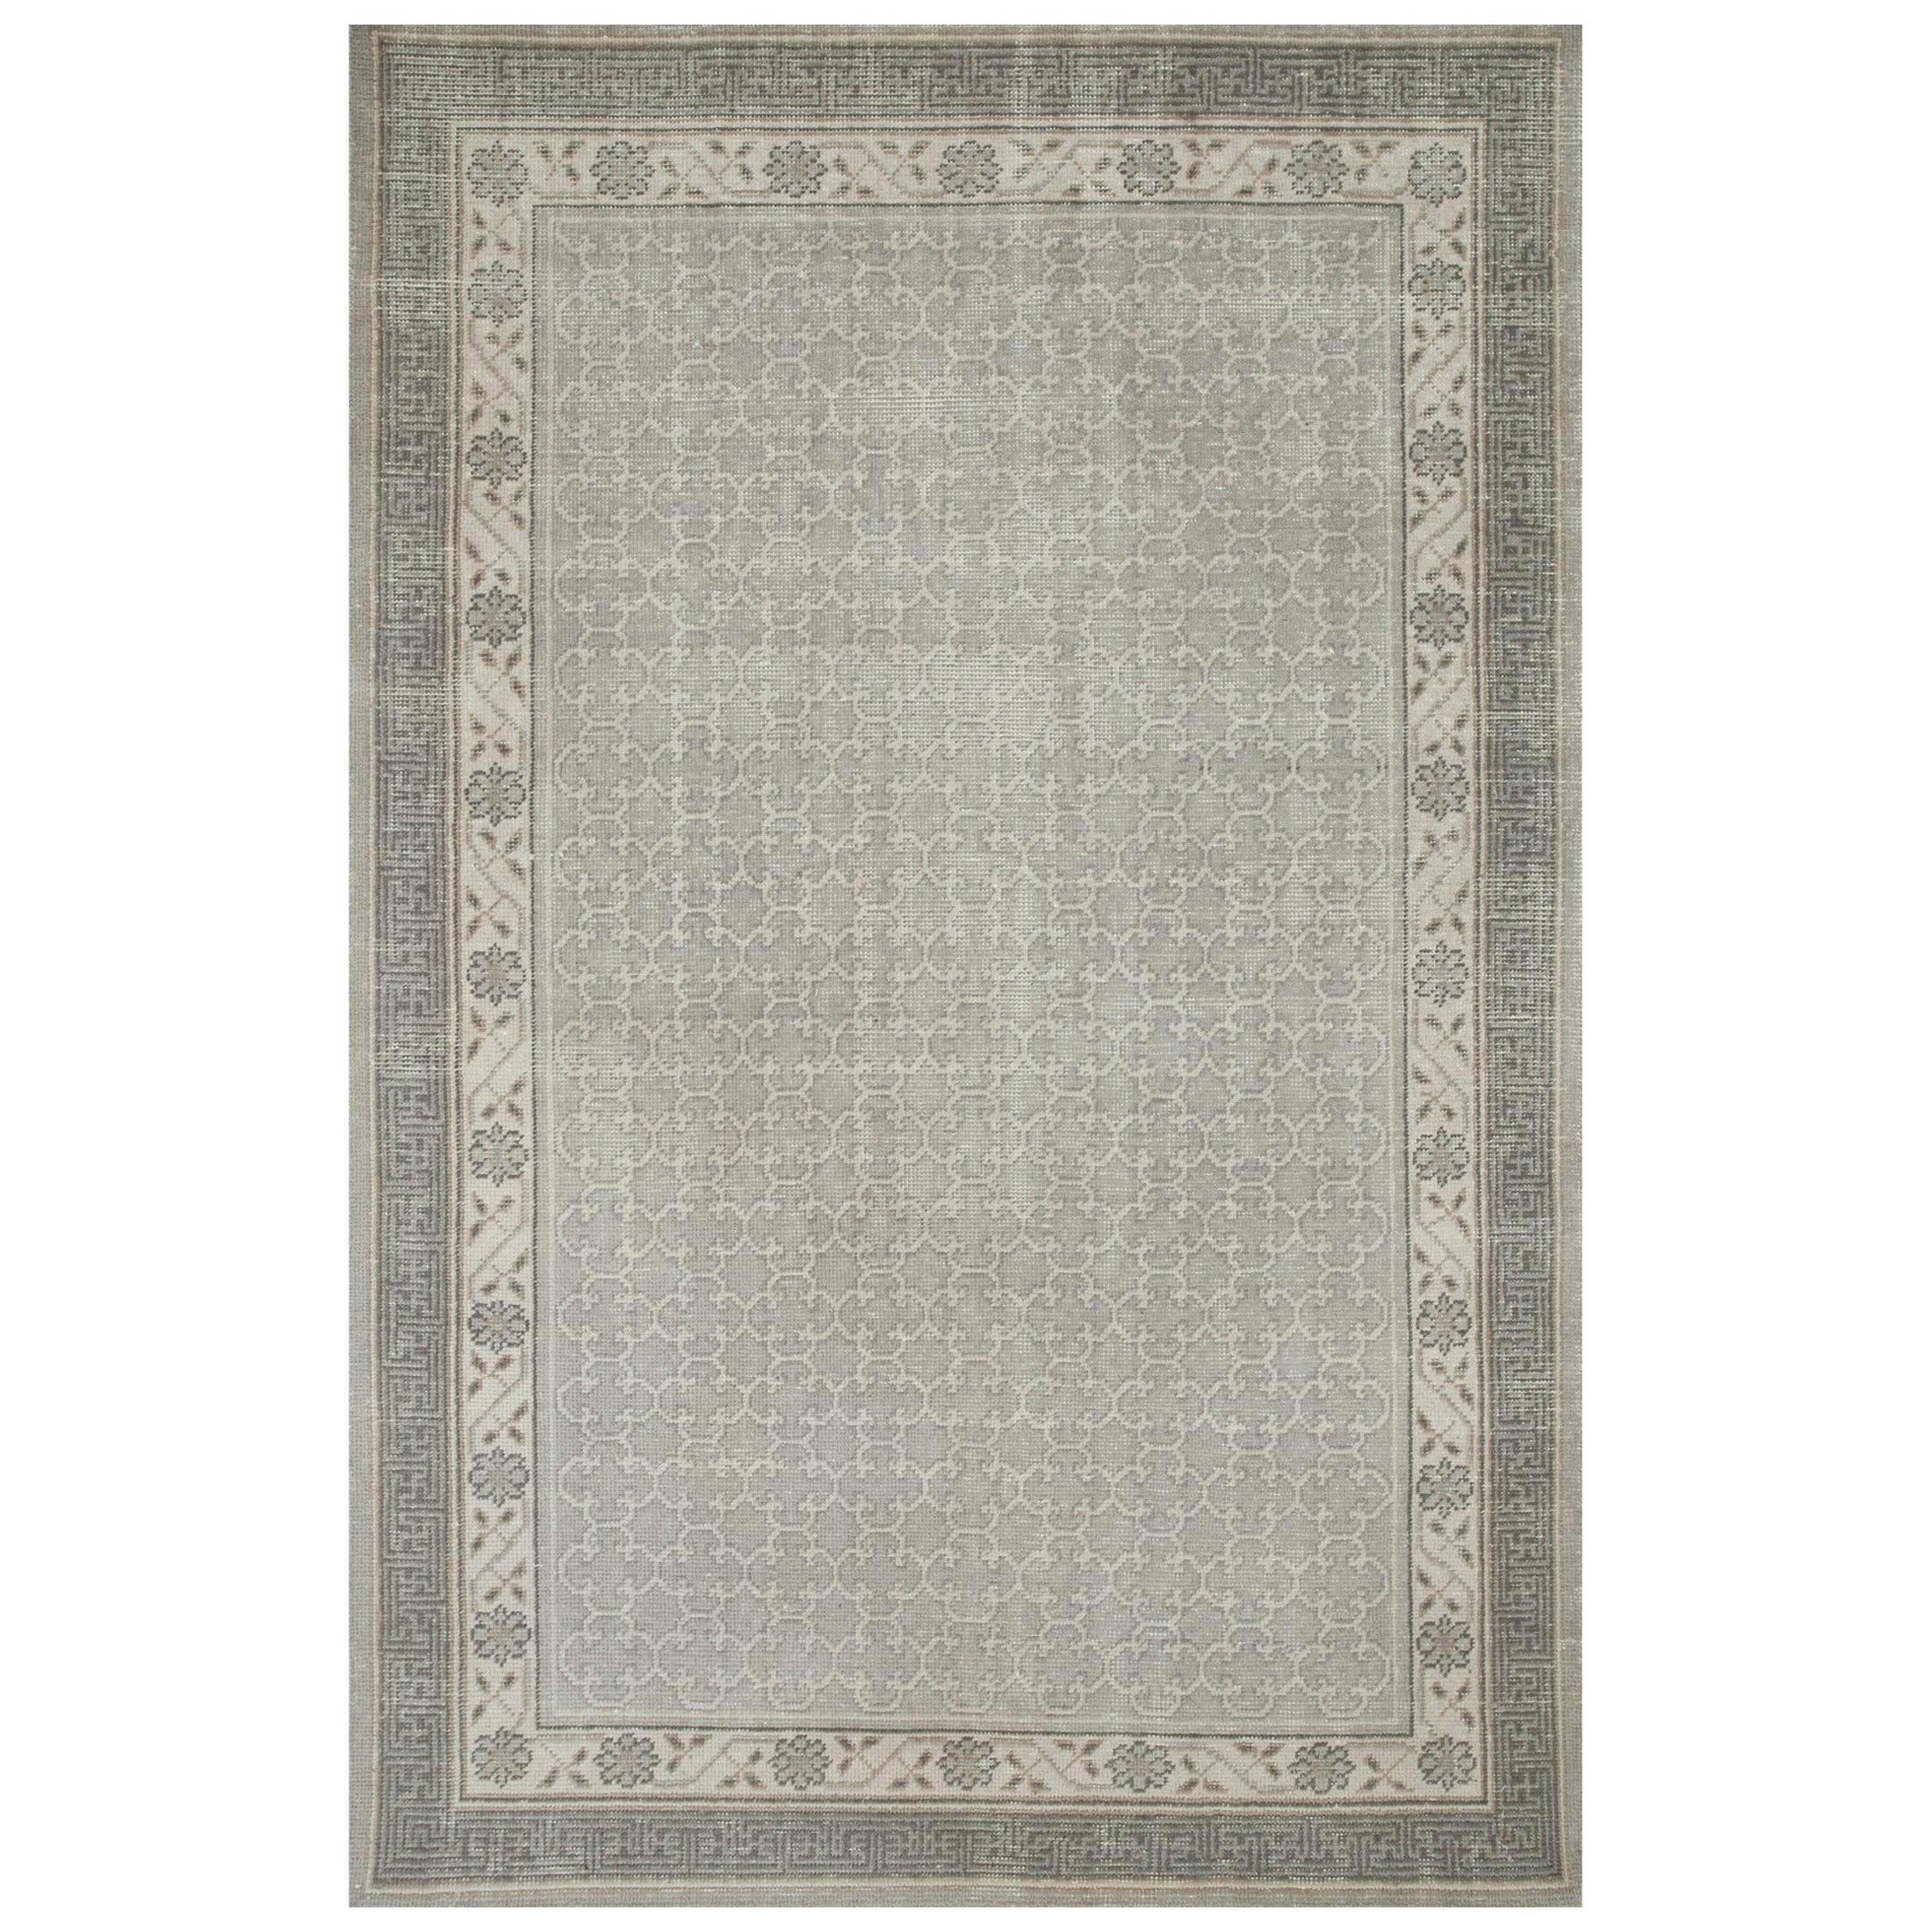 Cultural Odyssey 300X420 Cm Handgeknüpfter Teppich aus Eschenholz und antikem Weiß